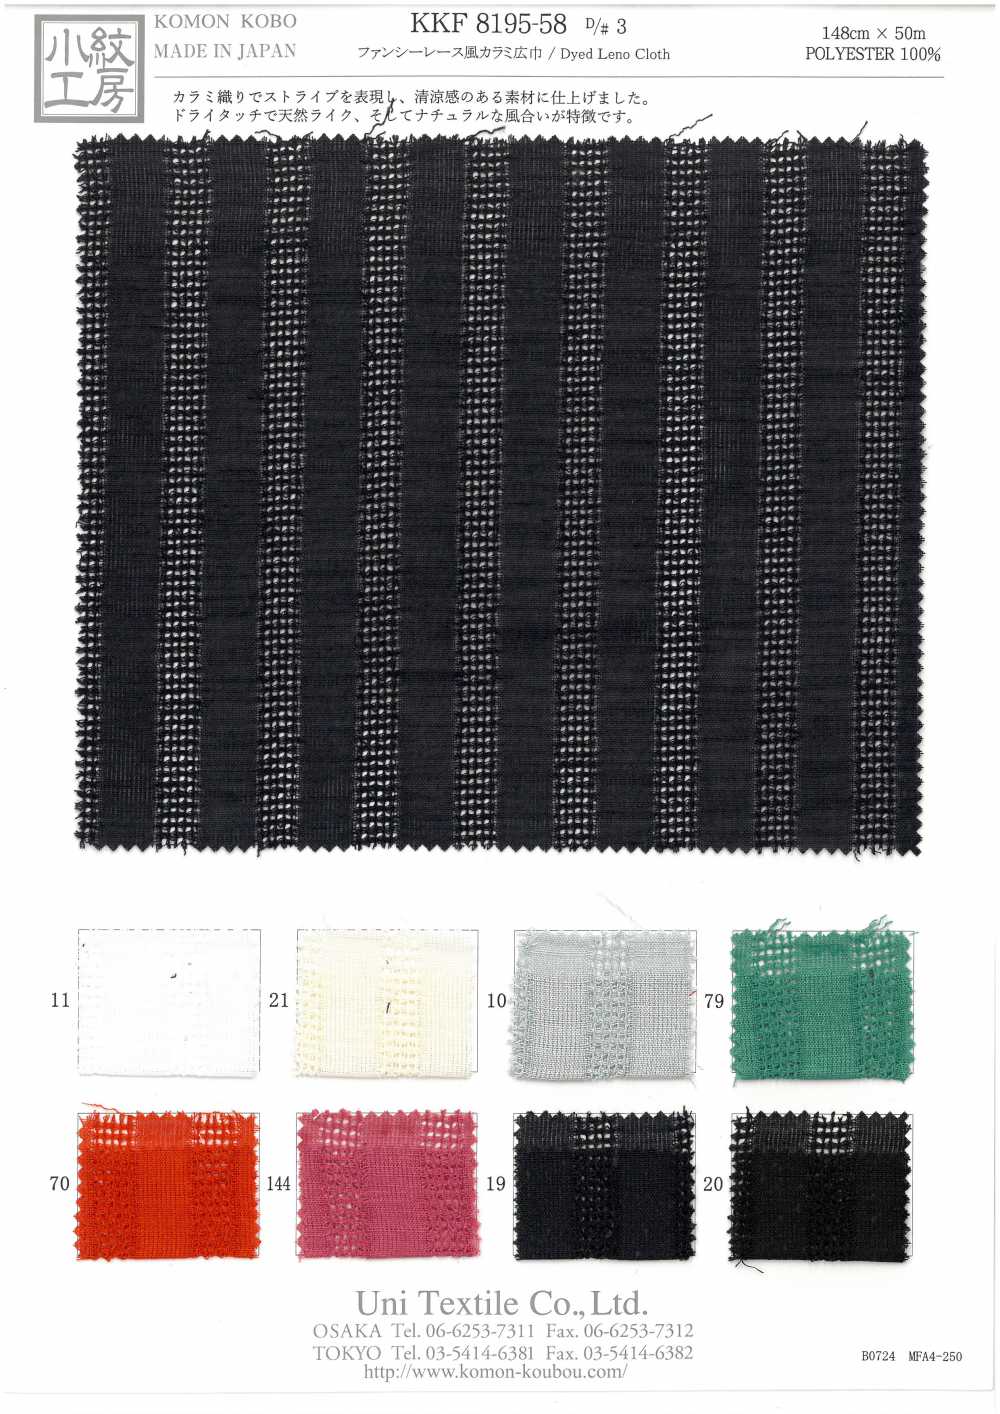 KKF8195-58-D/3 Tejido De Gasa Estilo Encaje Elegante[Fabrica Textil] Uni Textile